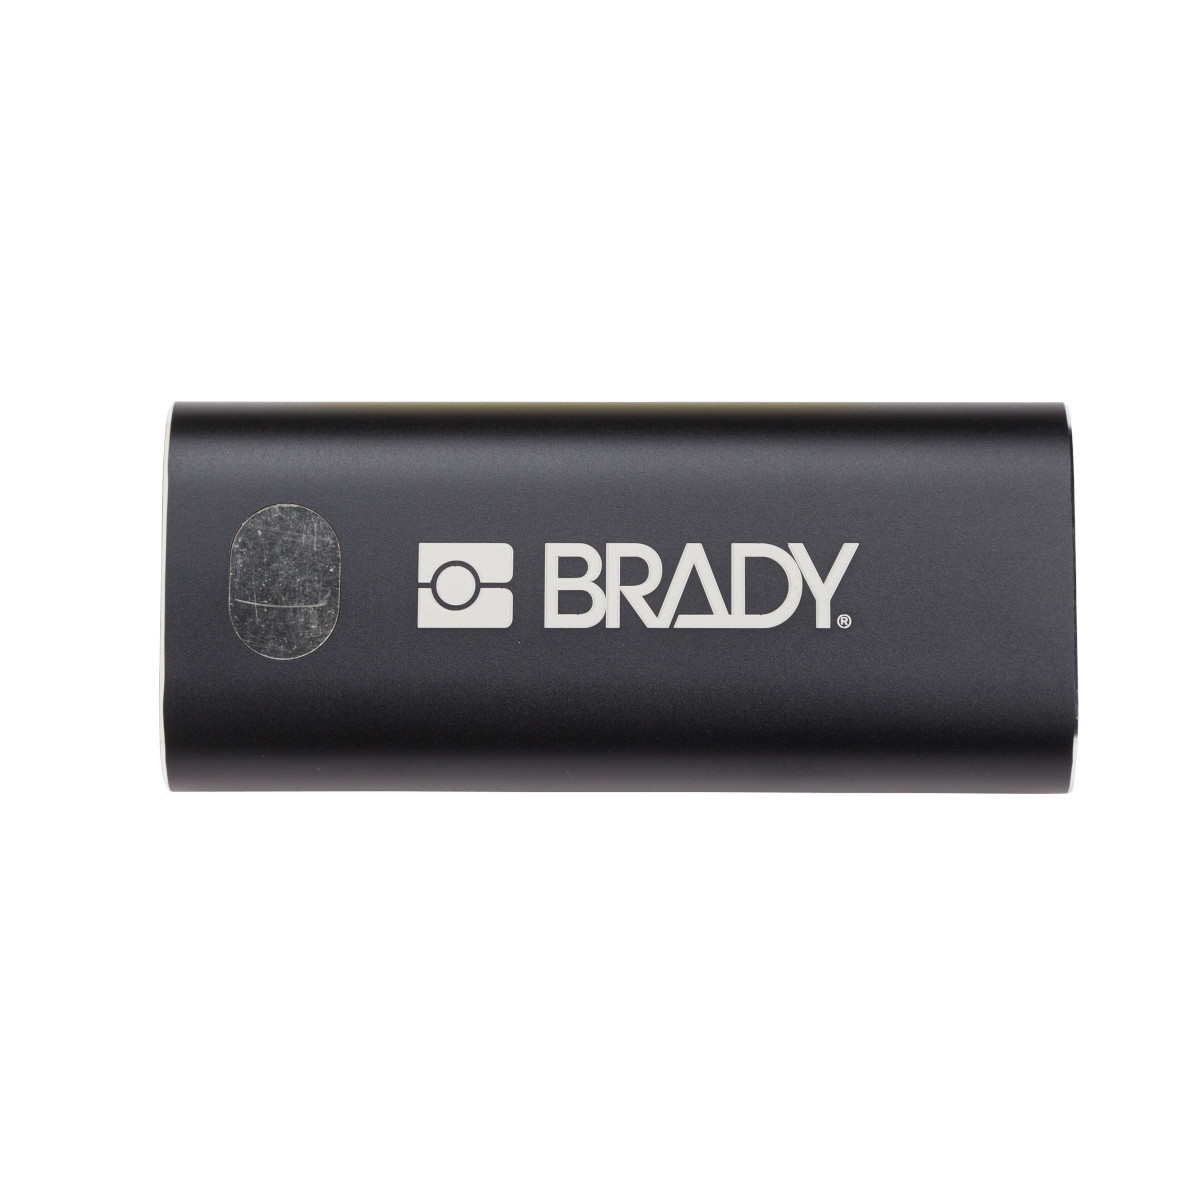 M211 Power bank - Brady Part: M211-POWER | Brady | Brady.eu